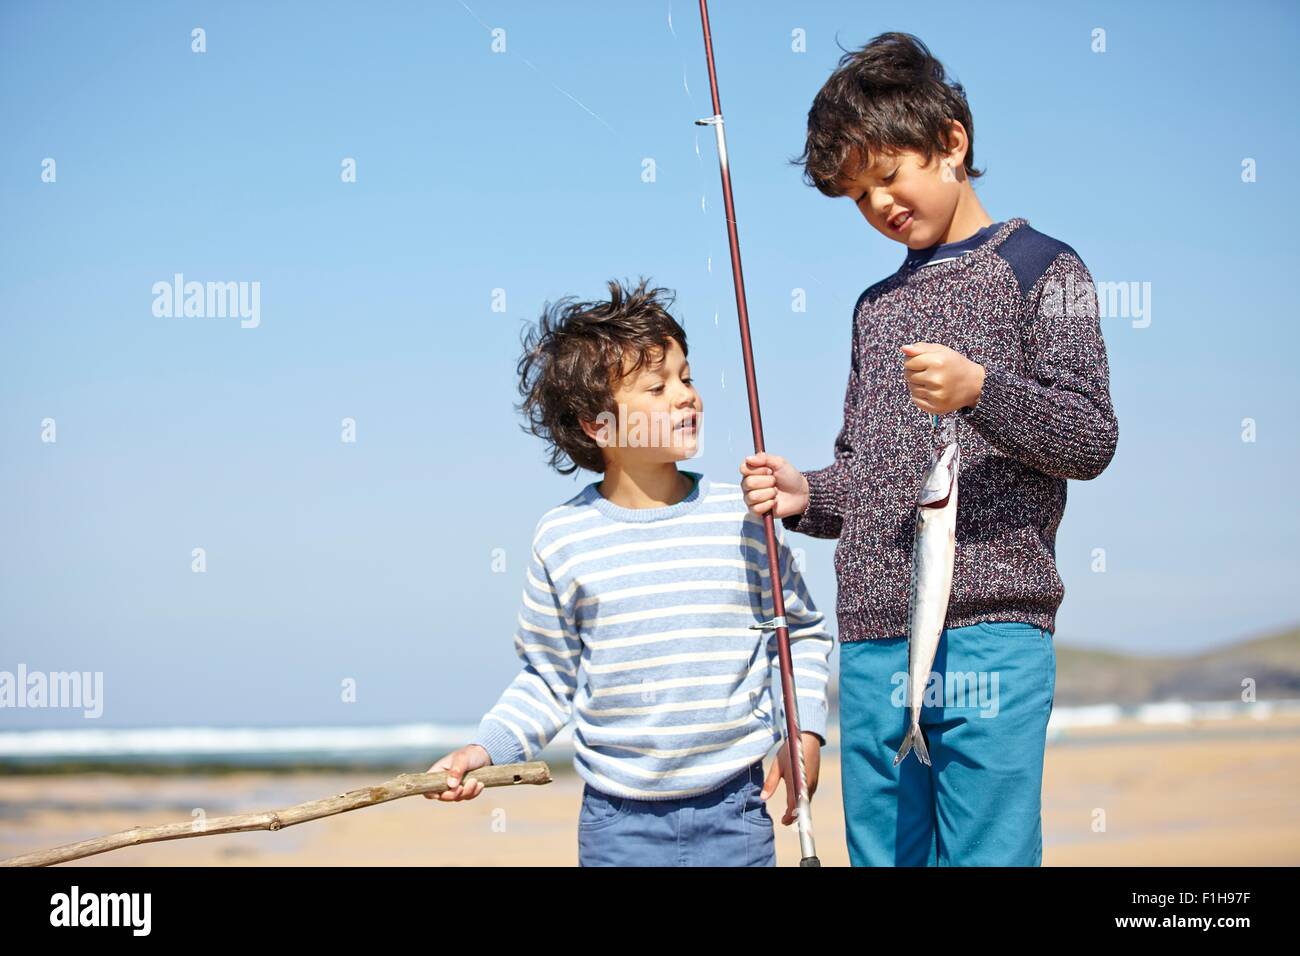 Deux jeunes garçons se tenant ensemble, tenant la canne à pêche et poissons Banque D'Images